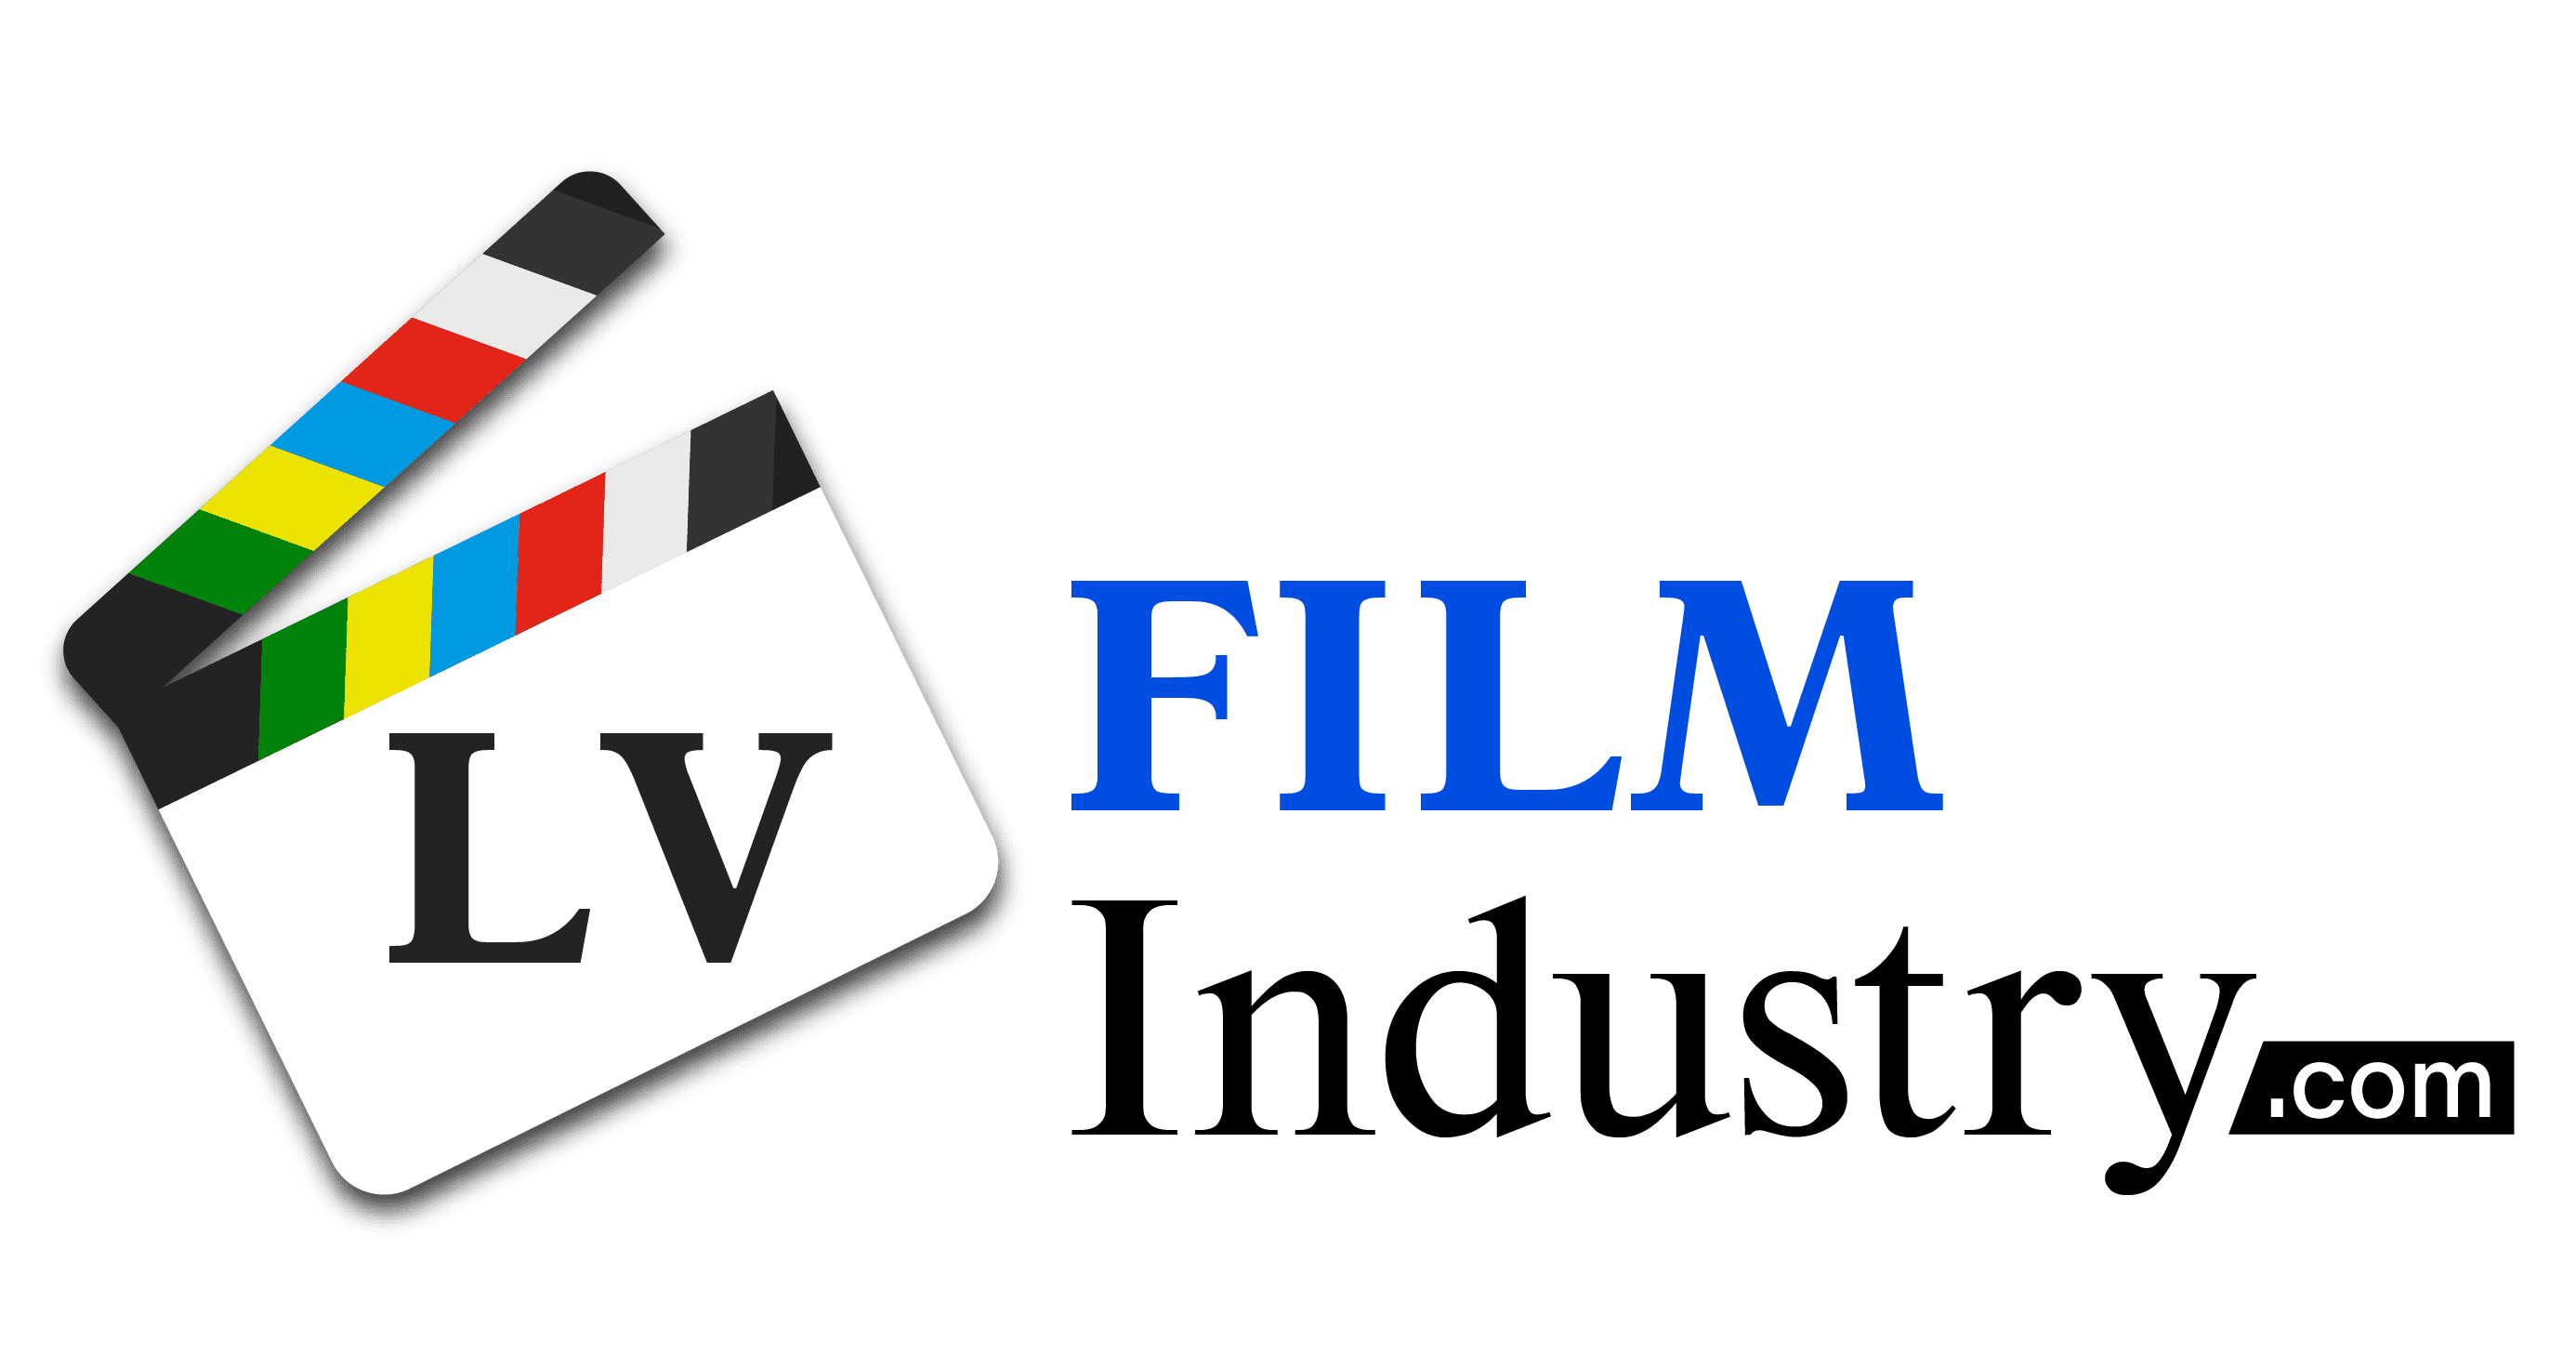 LVFilmIndustry.com